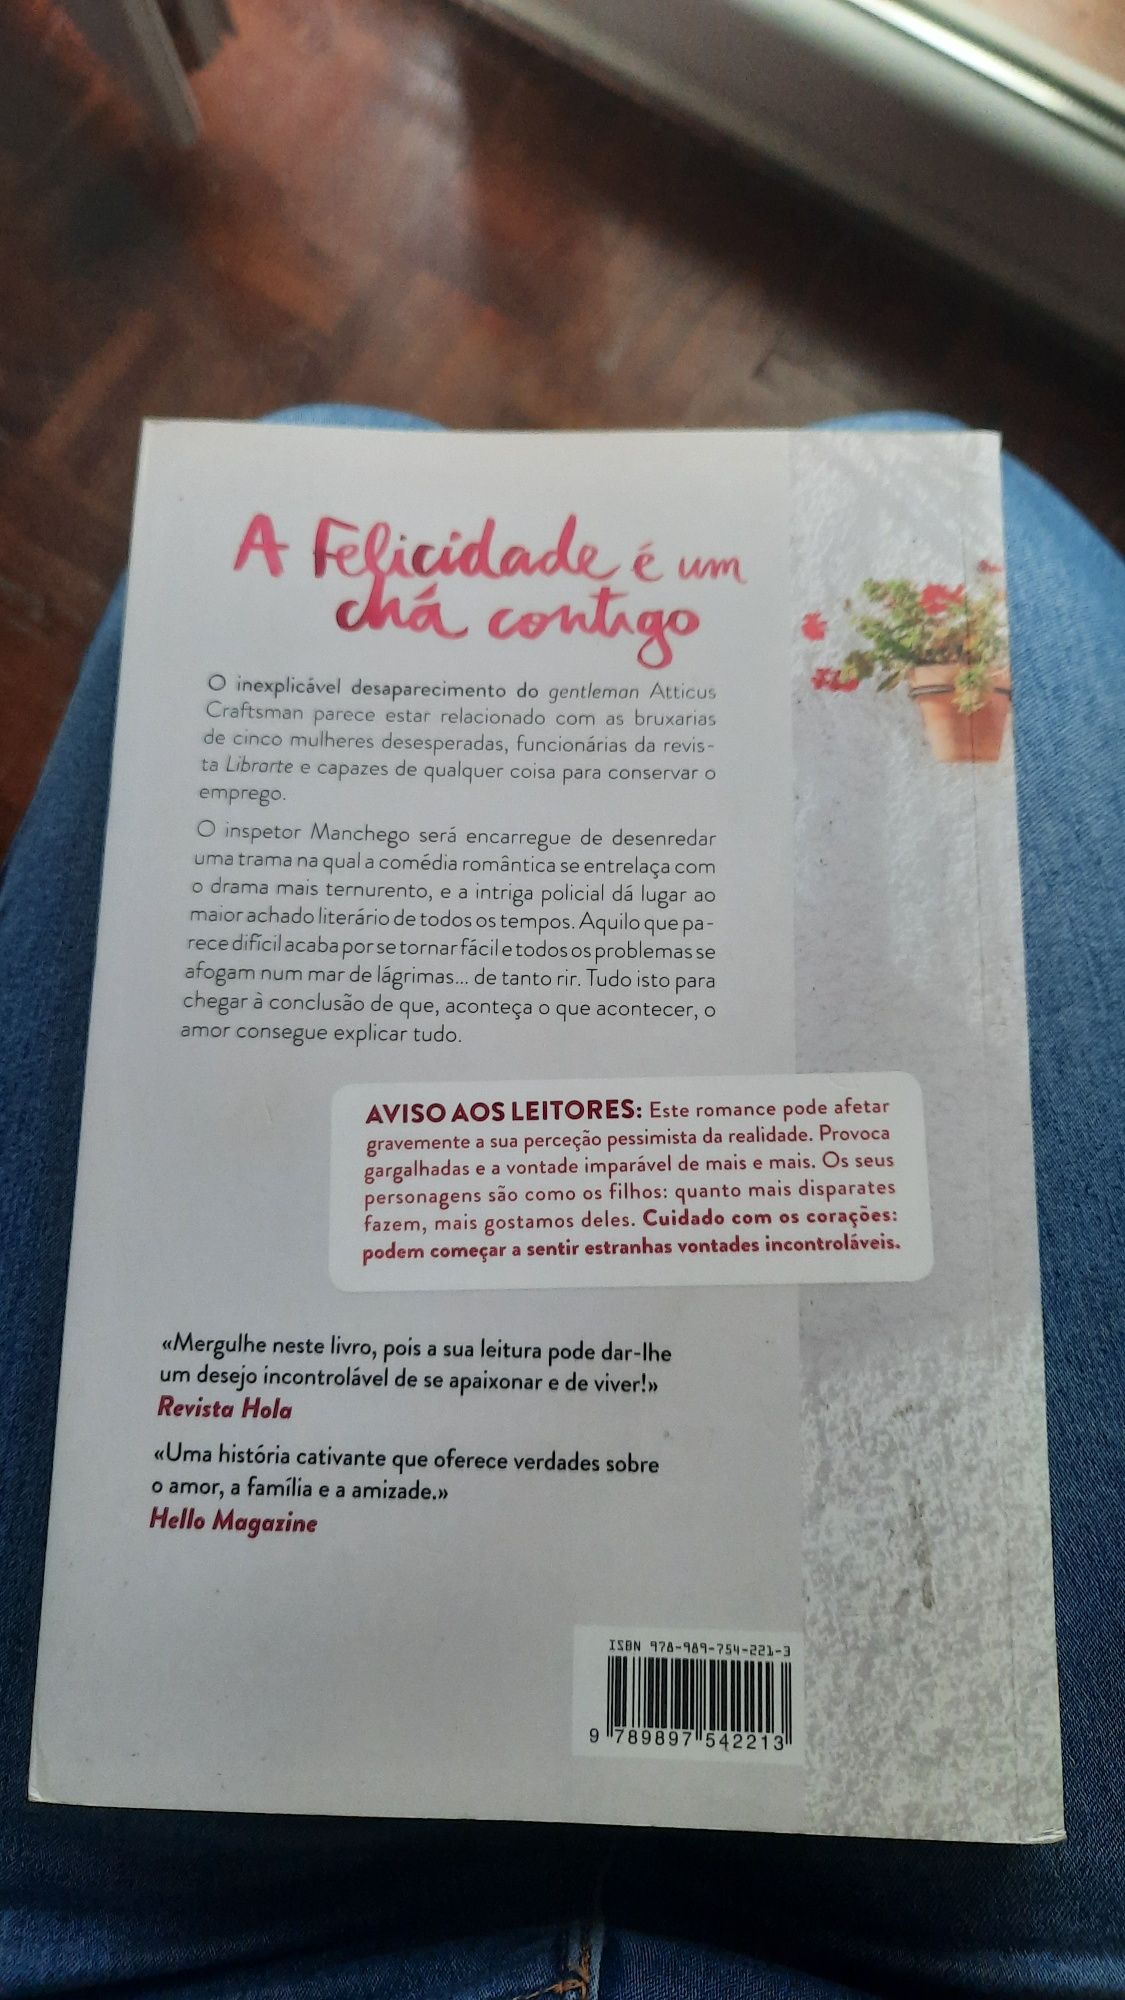 Livro "A felicidade é um chá contigo", Mamen Sánchez